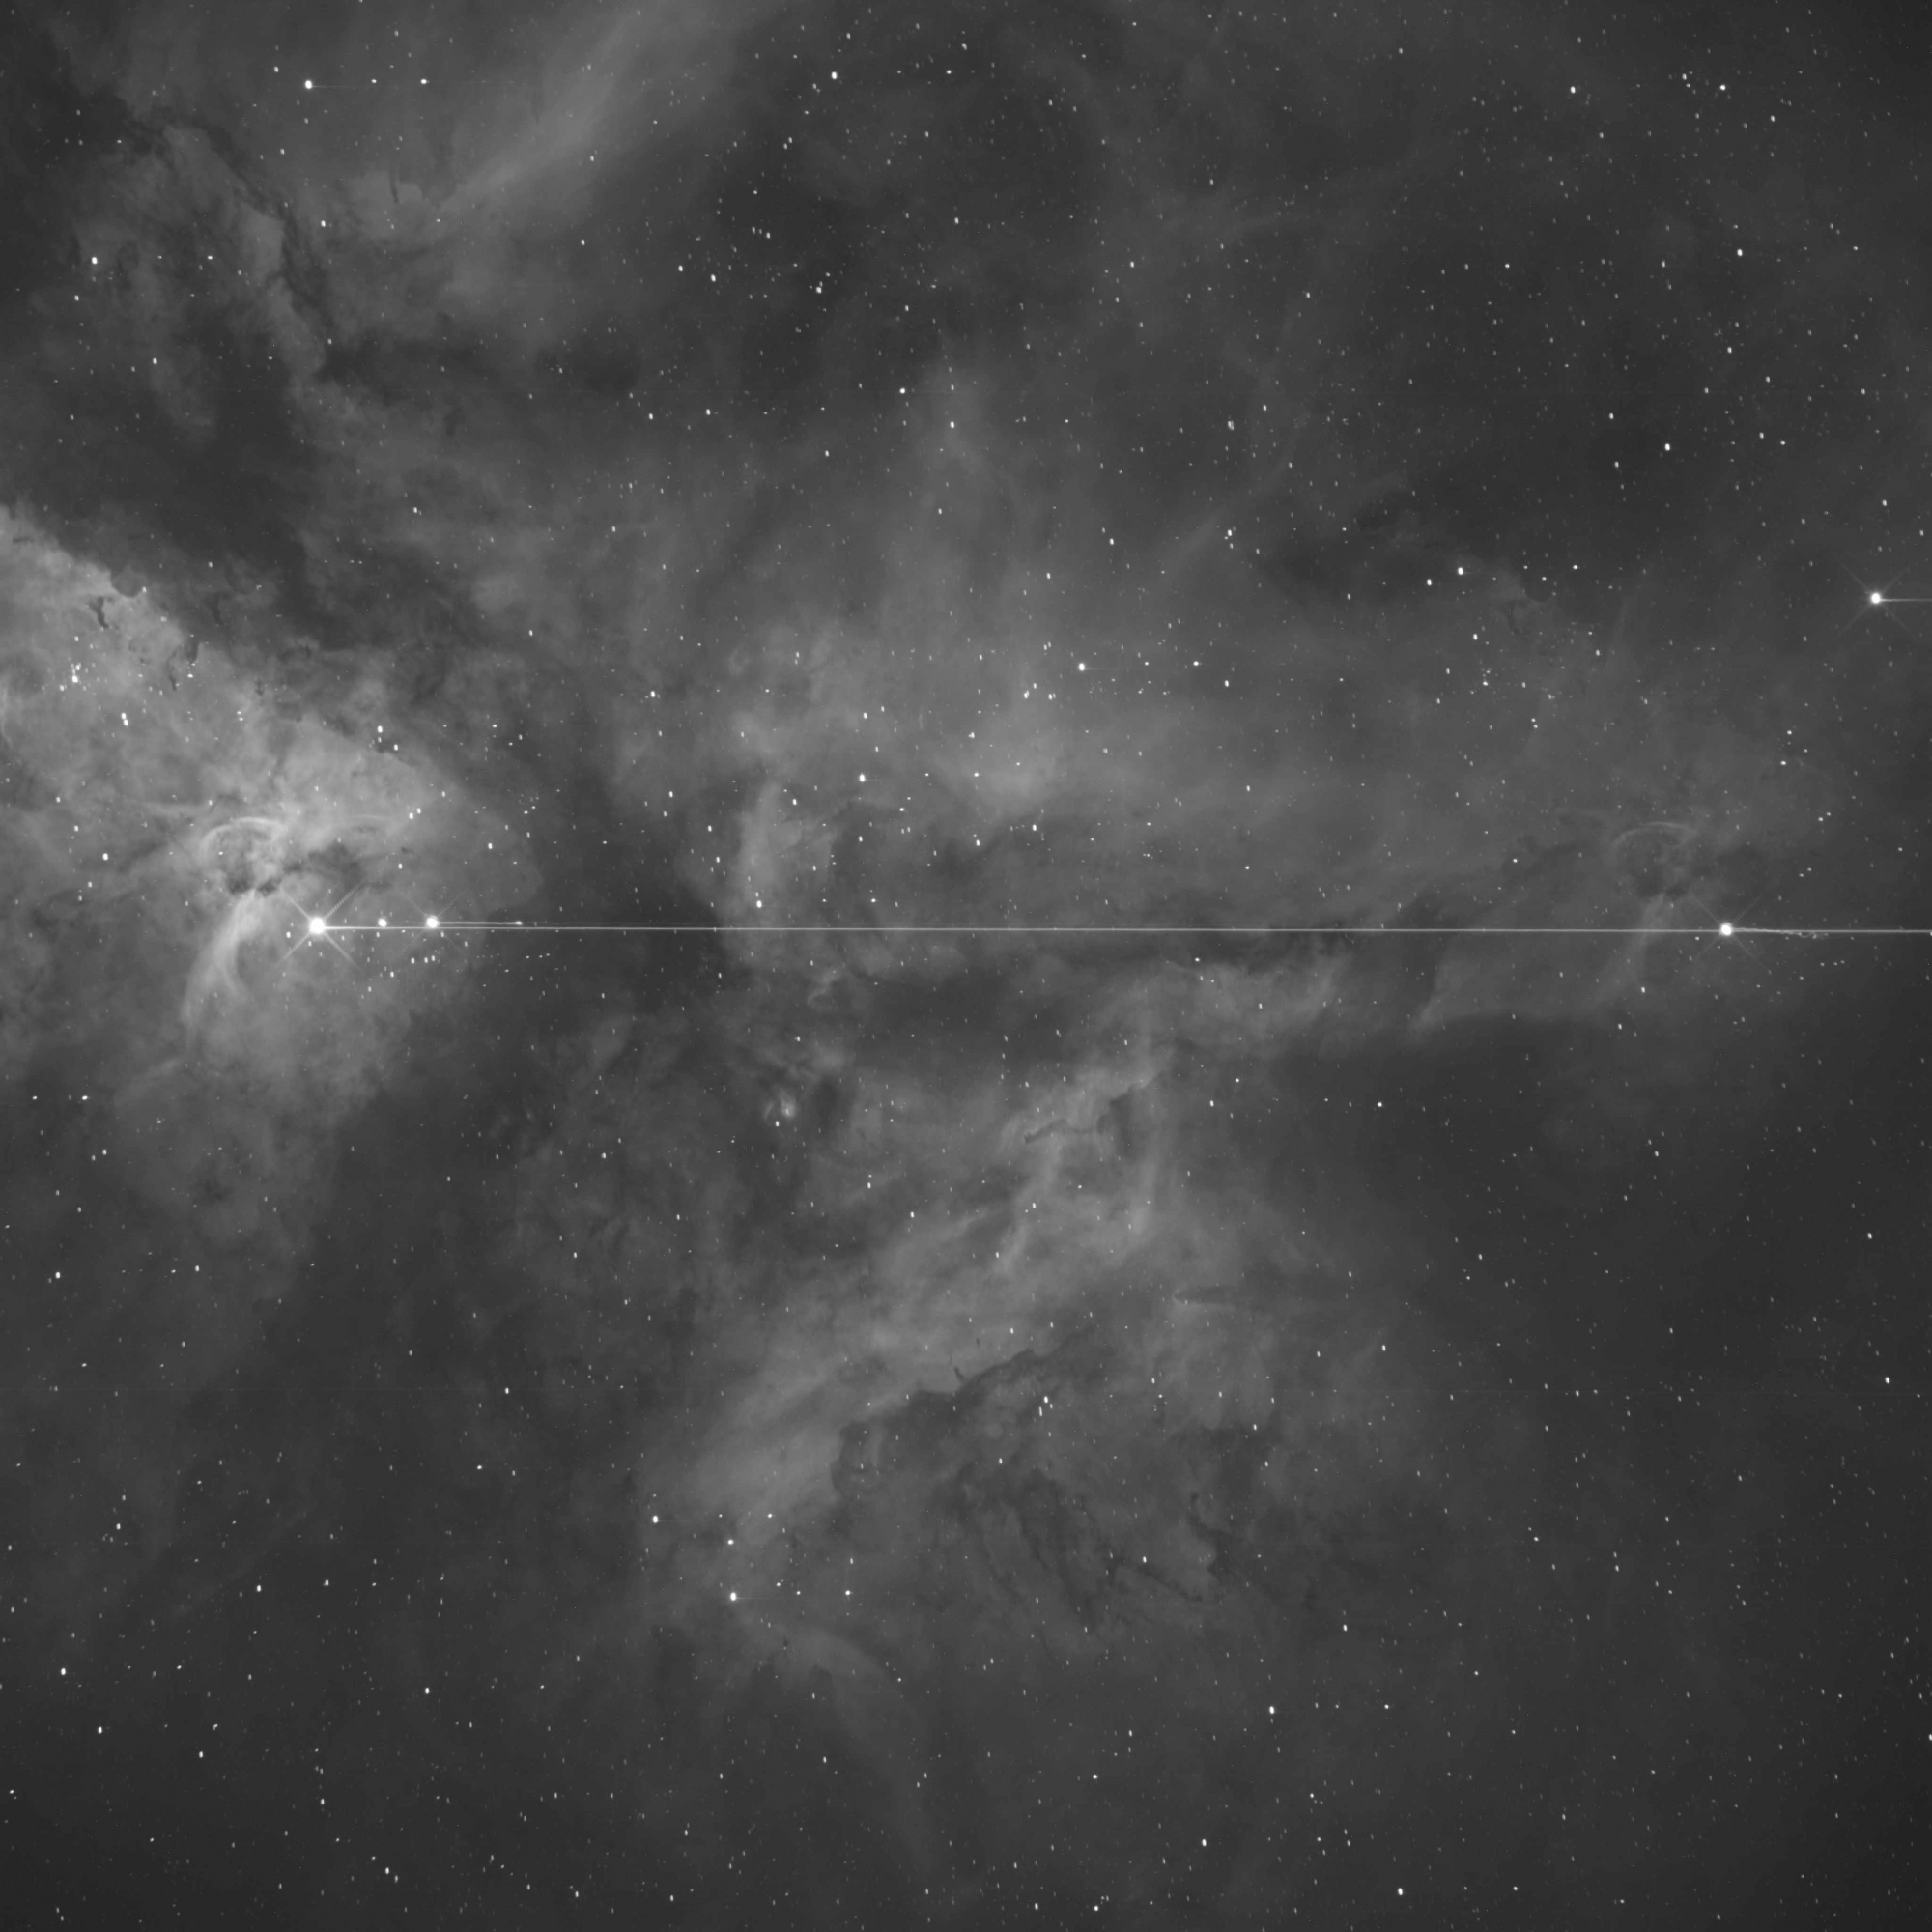 Eta Carinae-20190120@062006-1200S-H-alpha.jpg